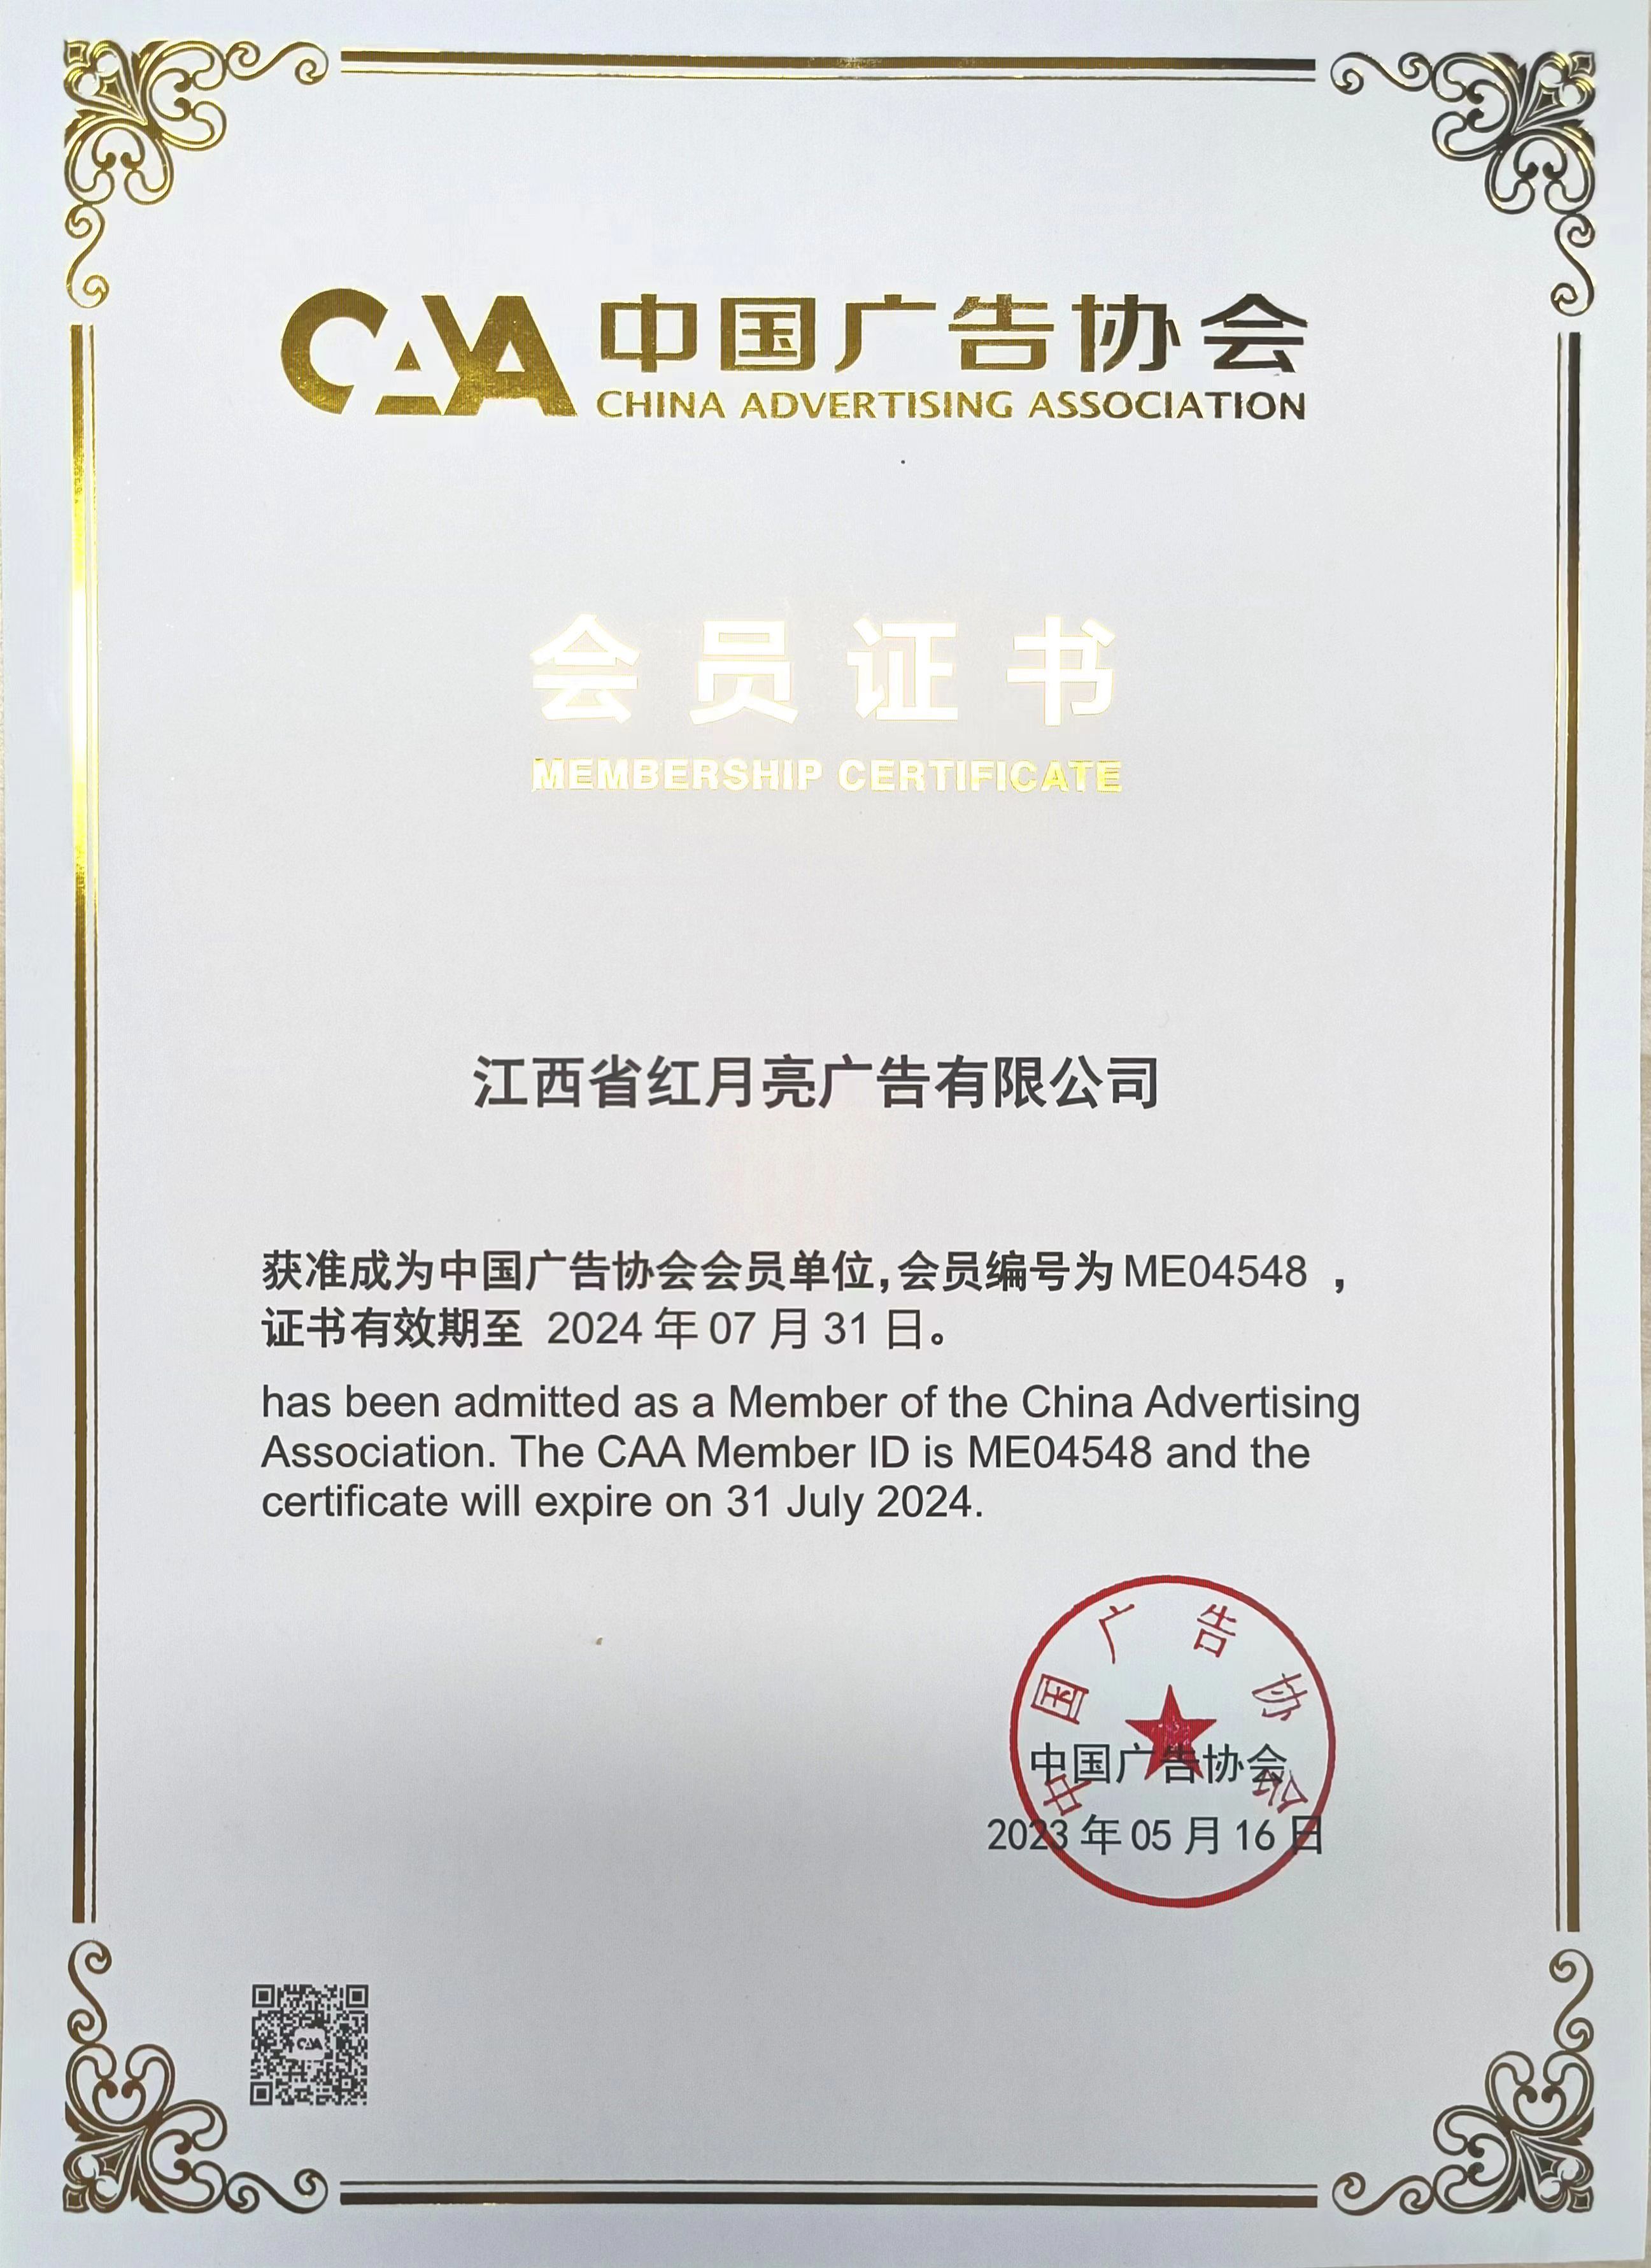 江西省紅月亮廣告有限公司為中國廣告協會會員單位